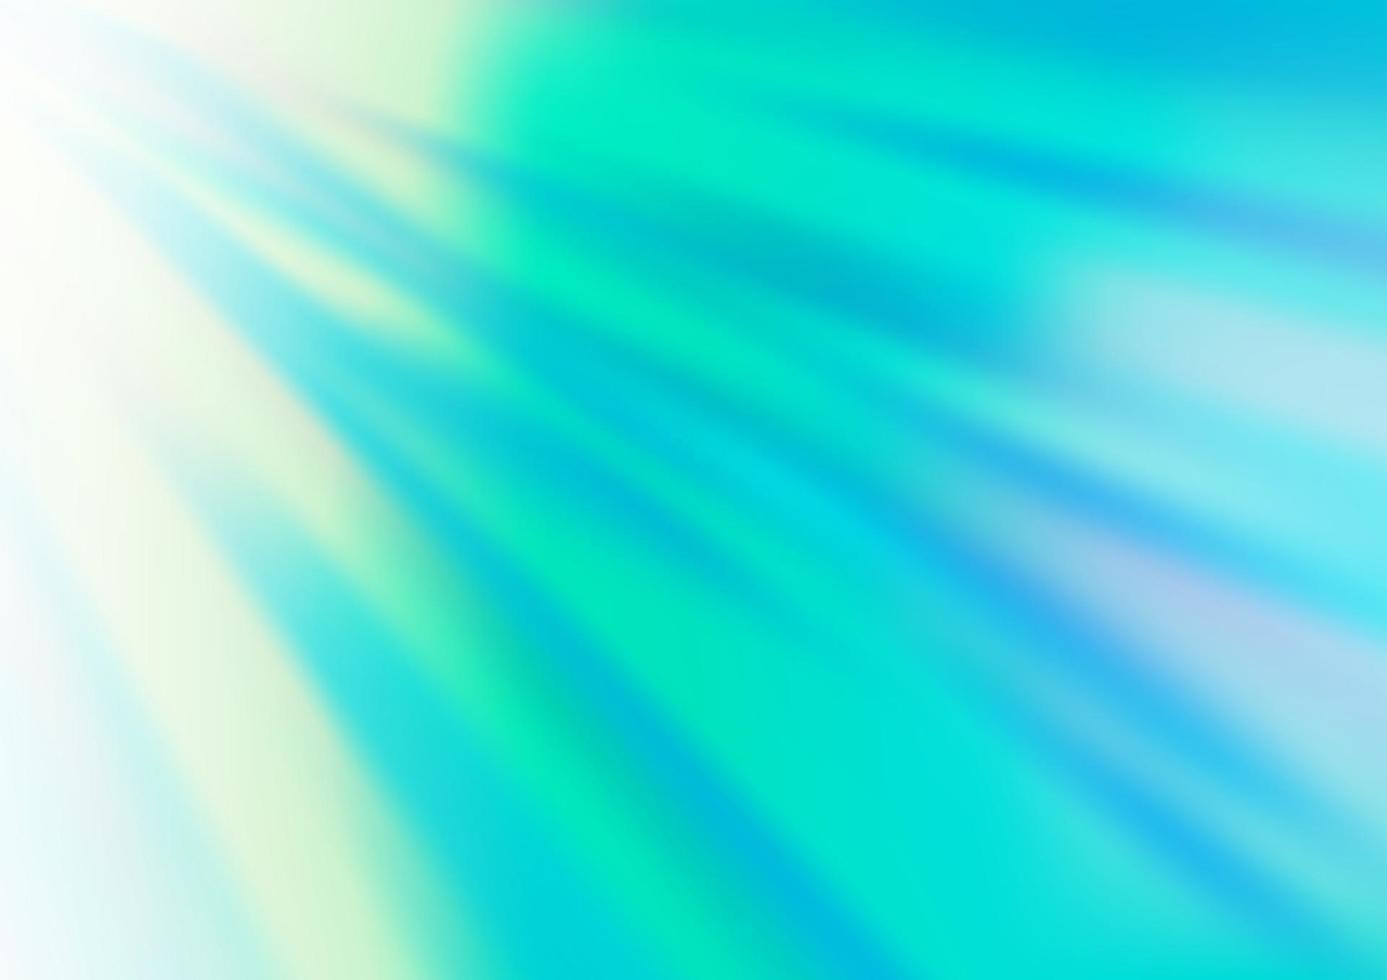 fundo abstrato do vetor azul claro, verde.